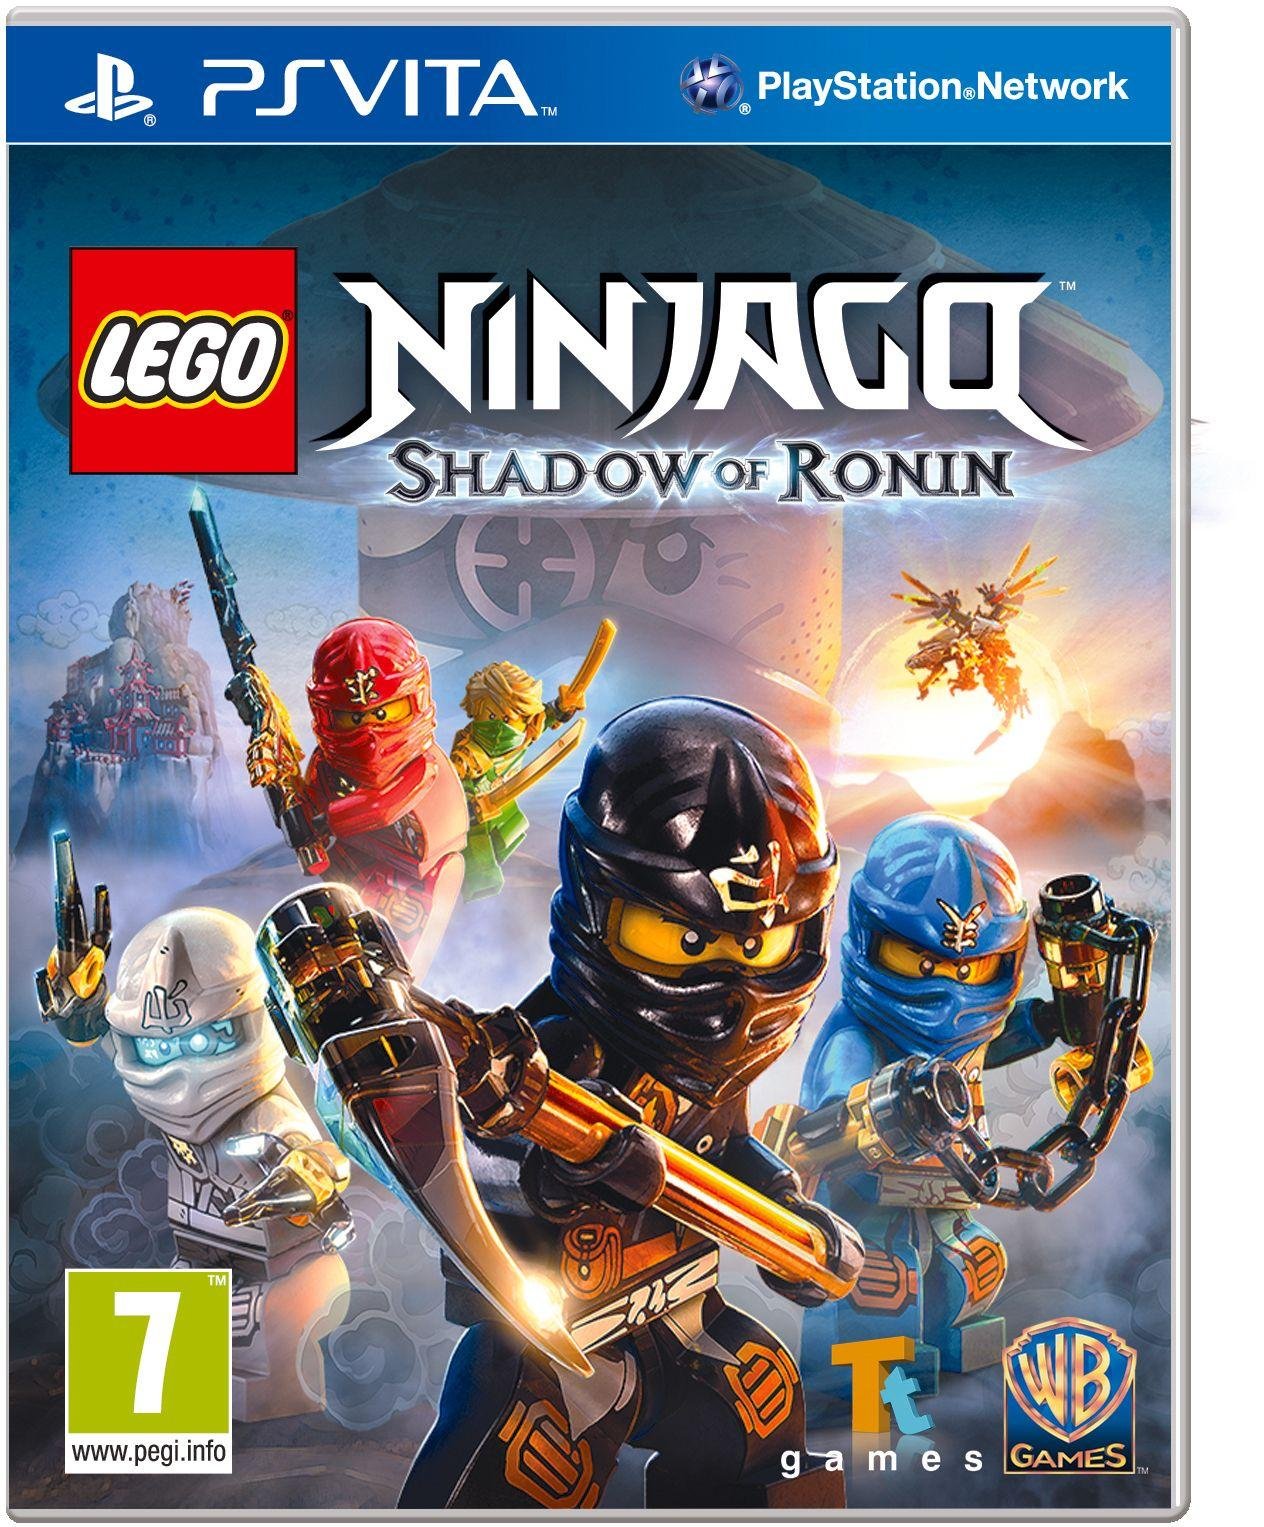 LEGO Ninjago: Shadow of Ronin PS Vita Game. Review